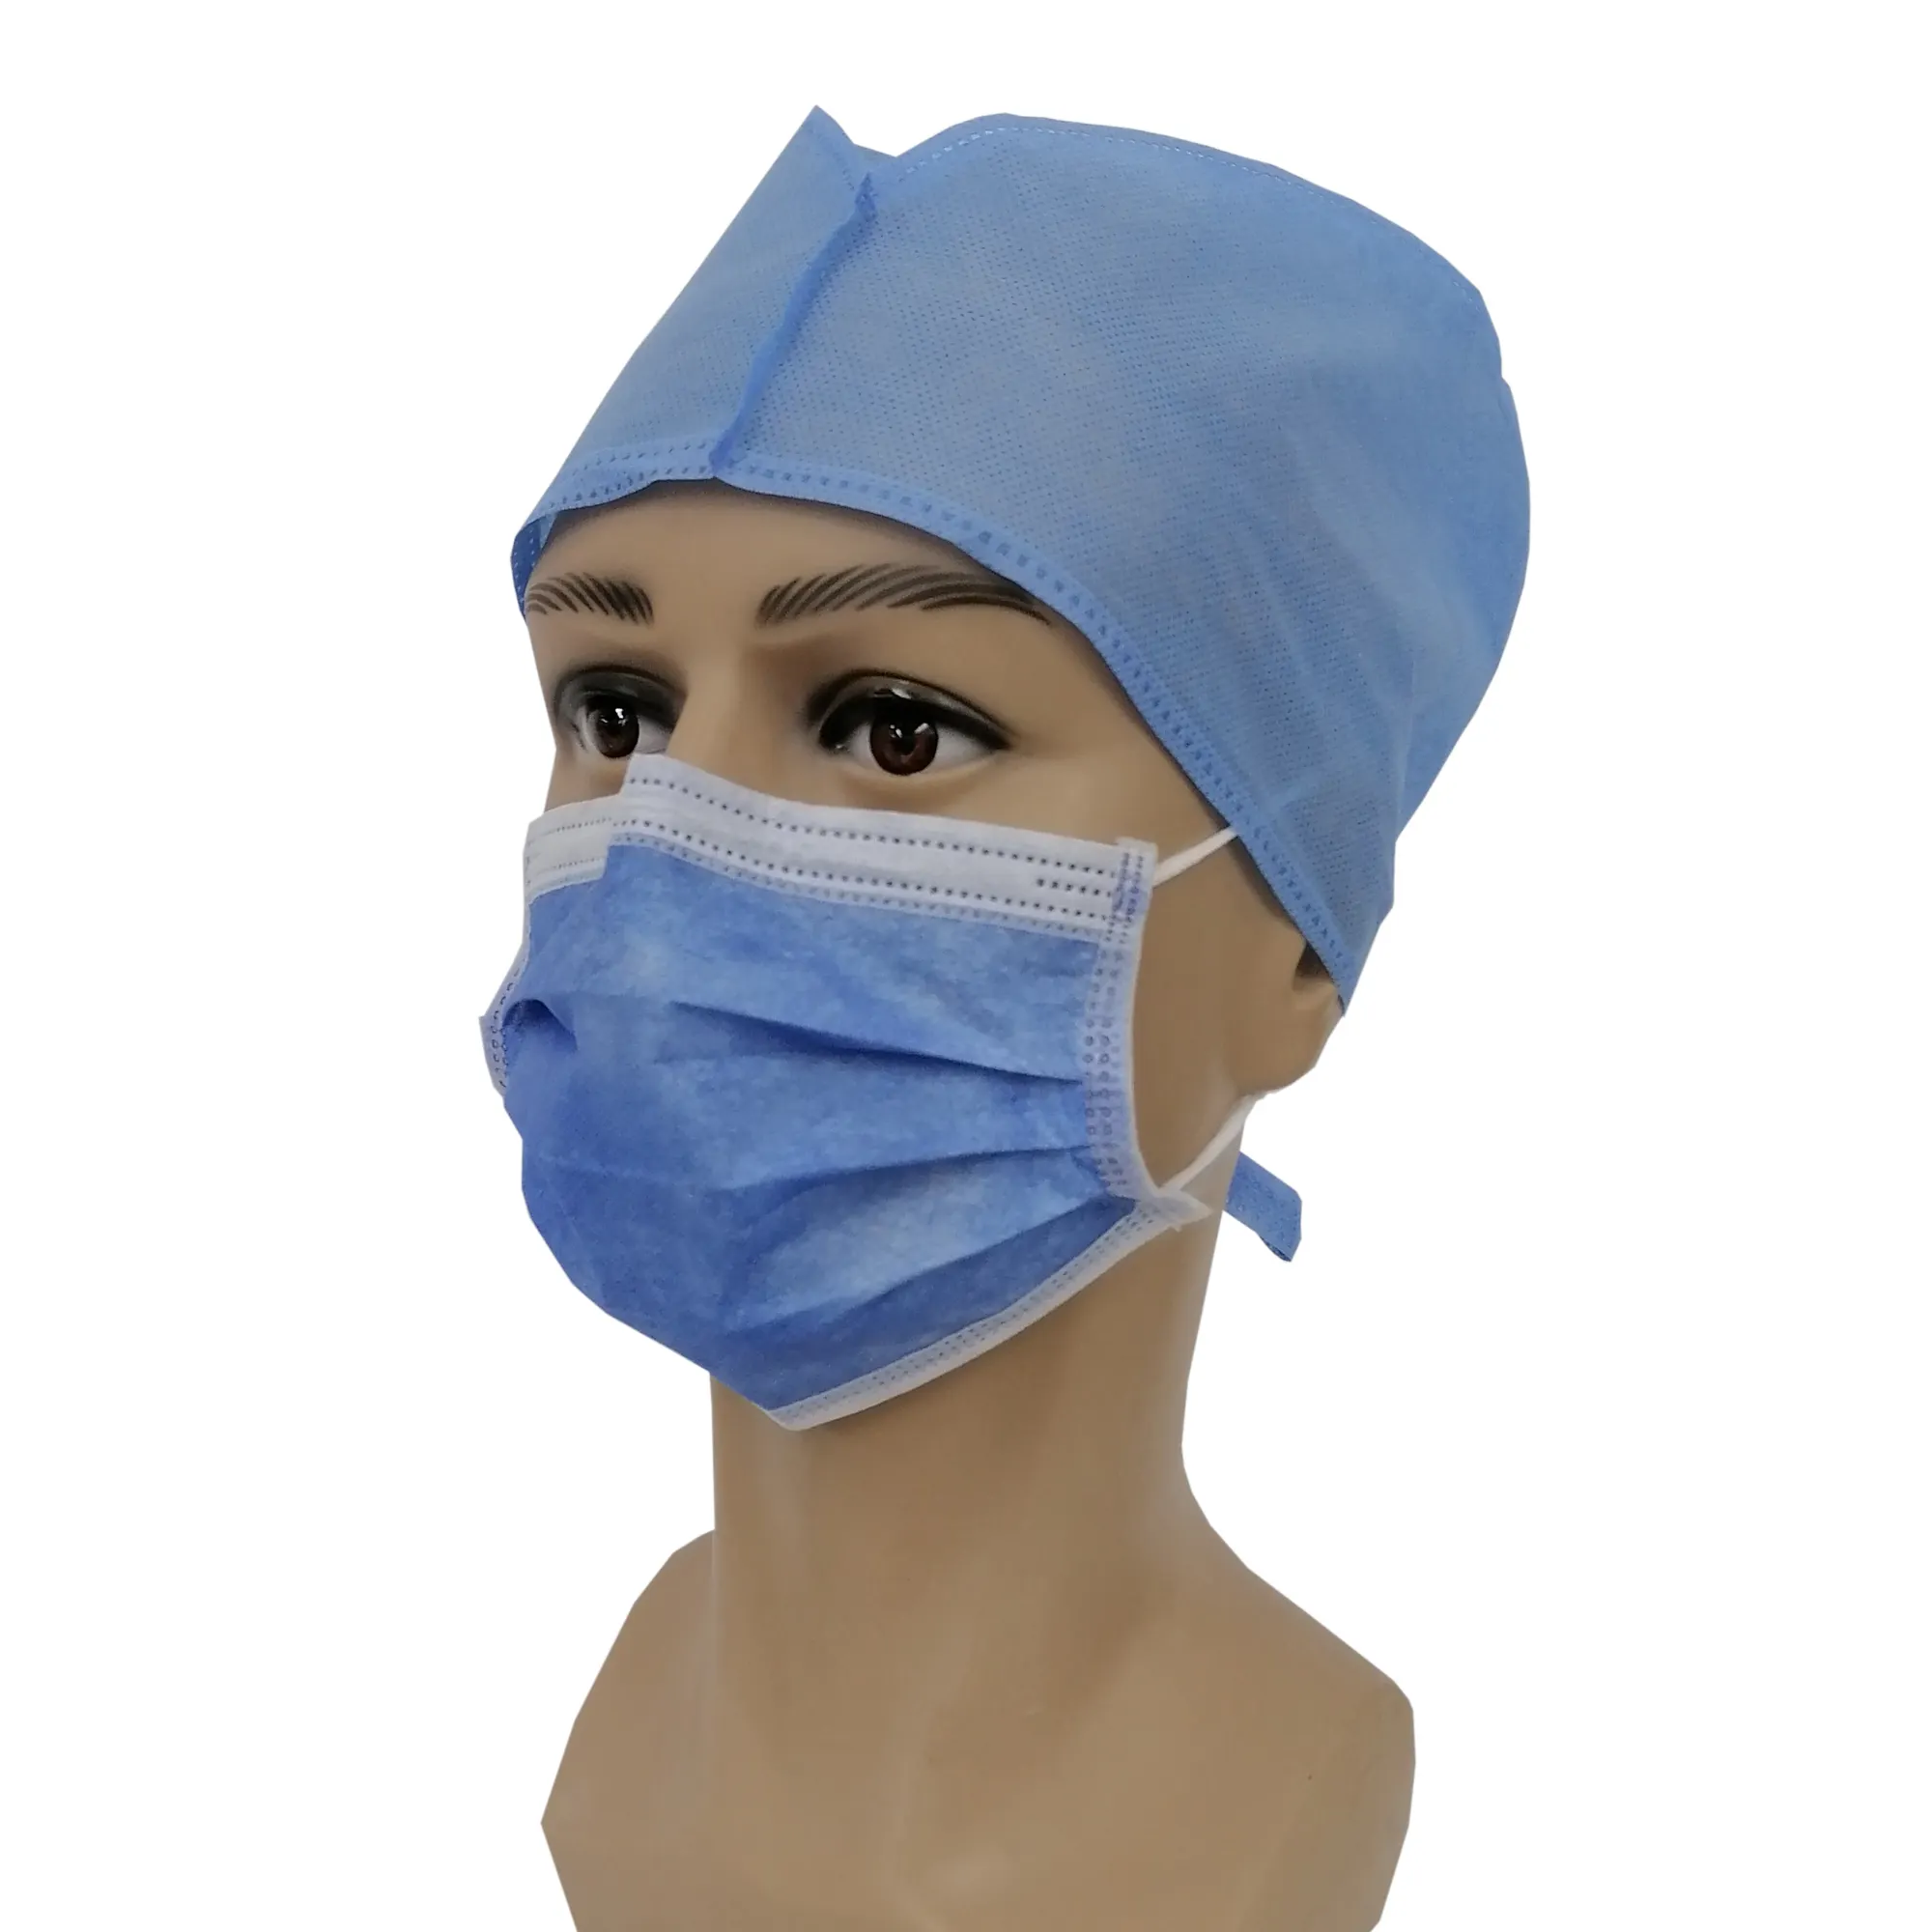 Toptan 3 katmanlar olmayan dokuma yüz maskss düşük fiyat yüksek kalite tek kullanımlık tıbbi yüz maskesi